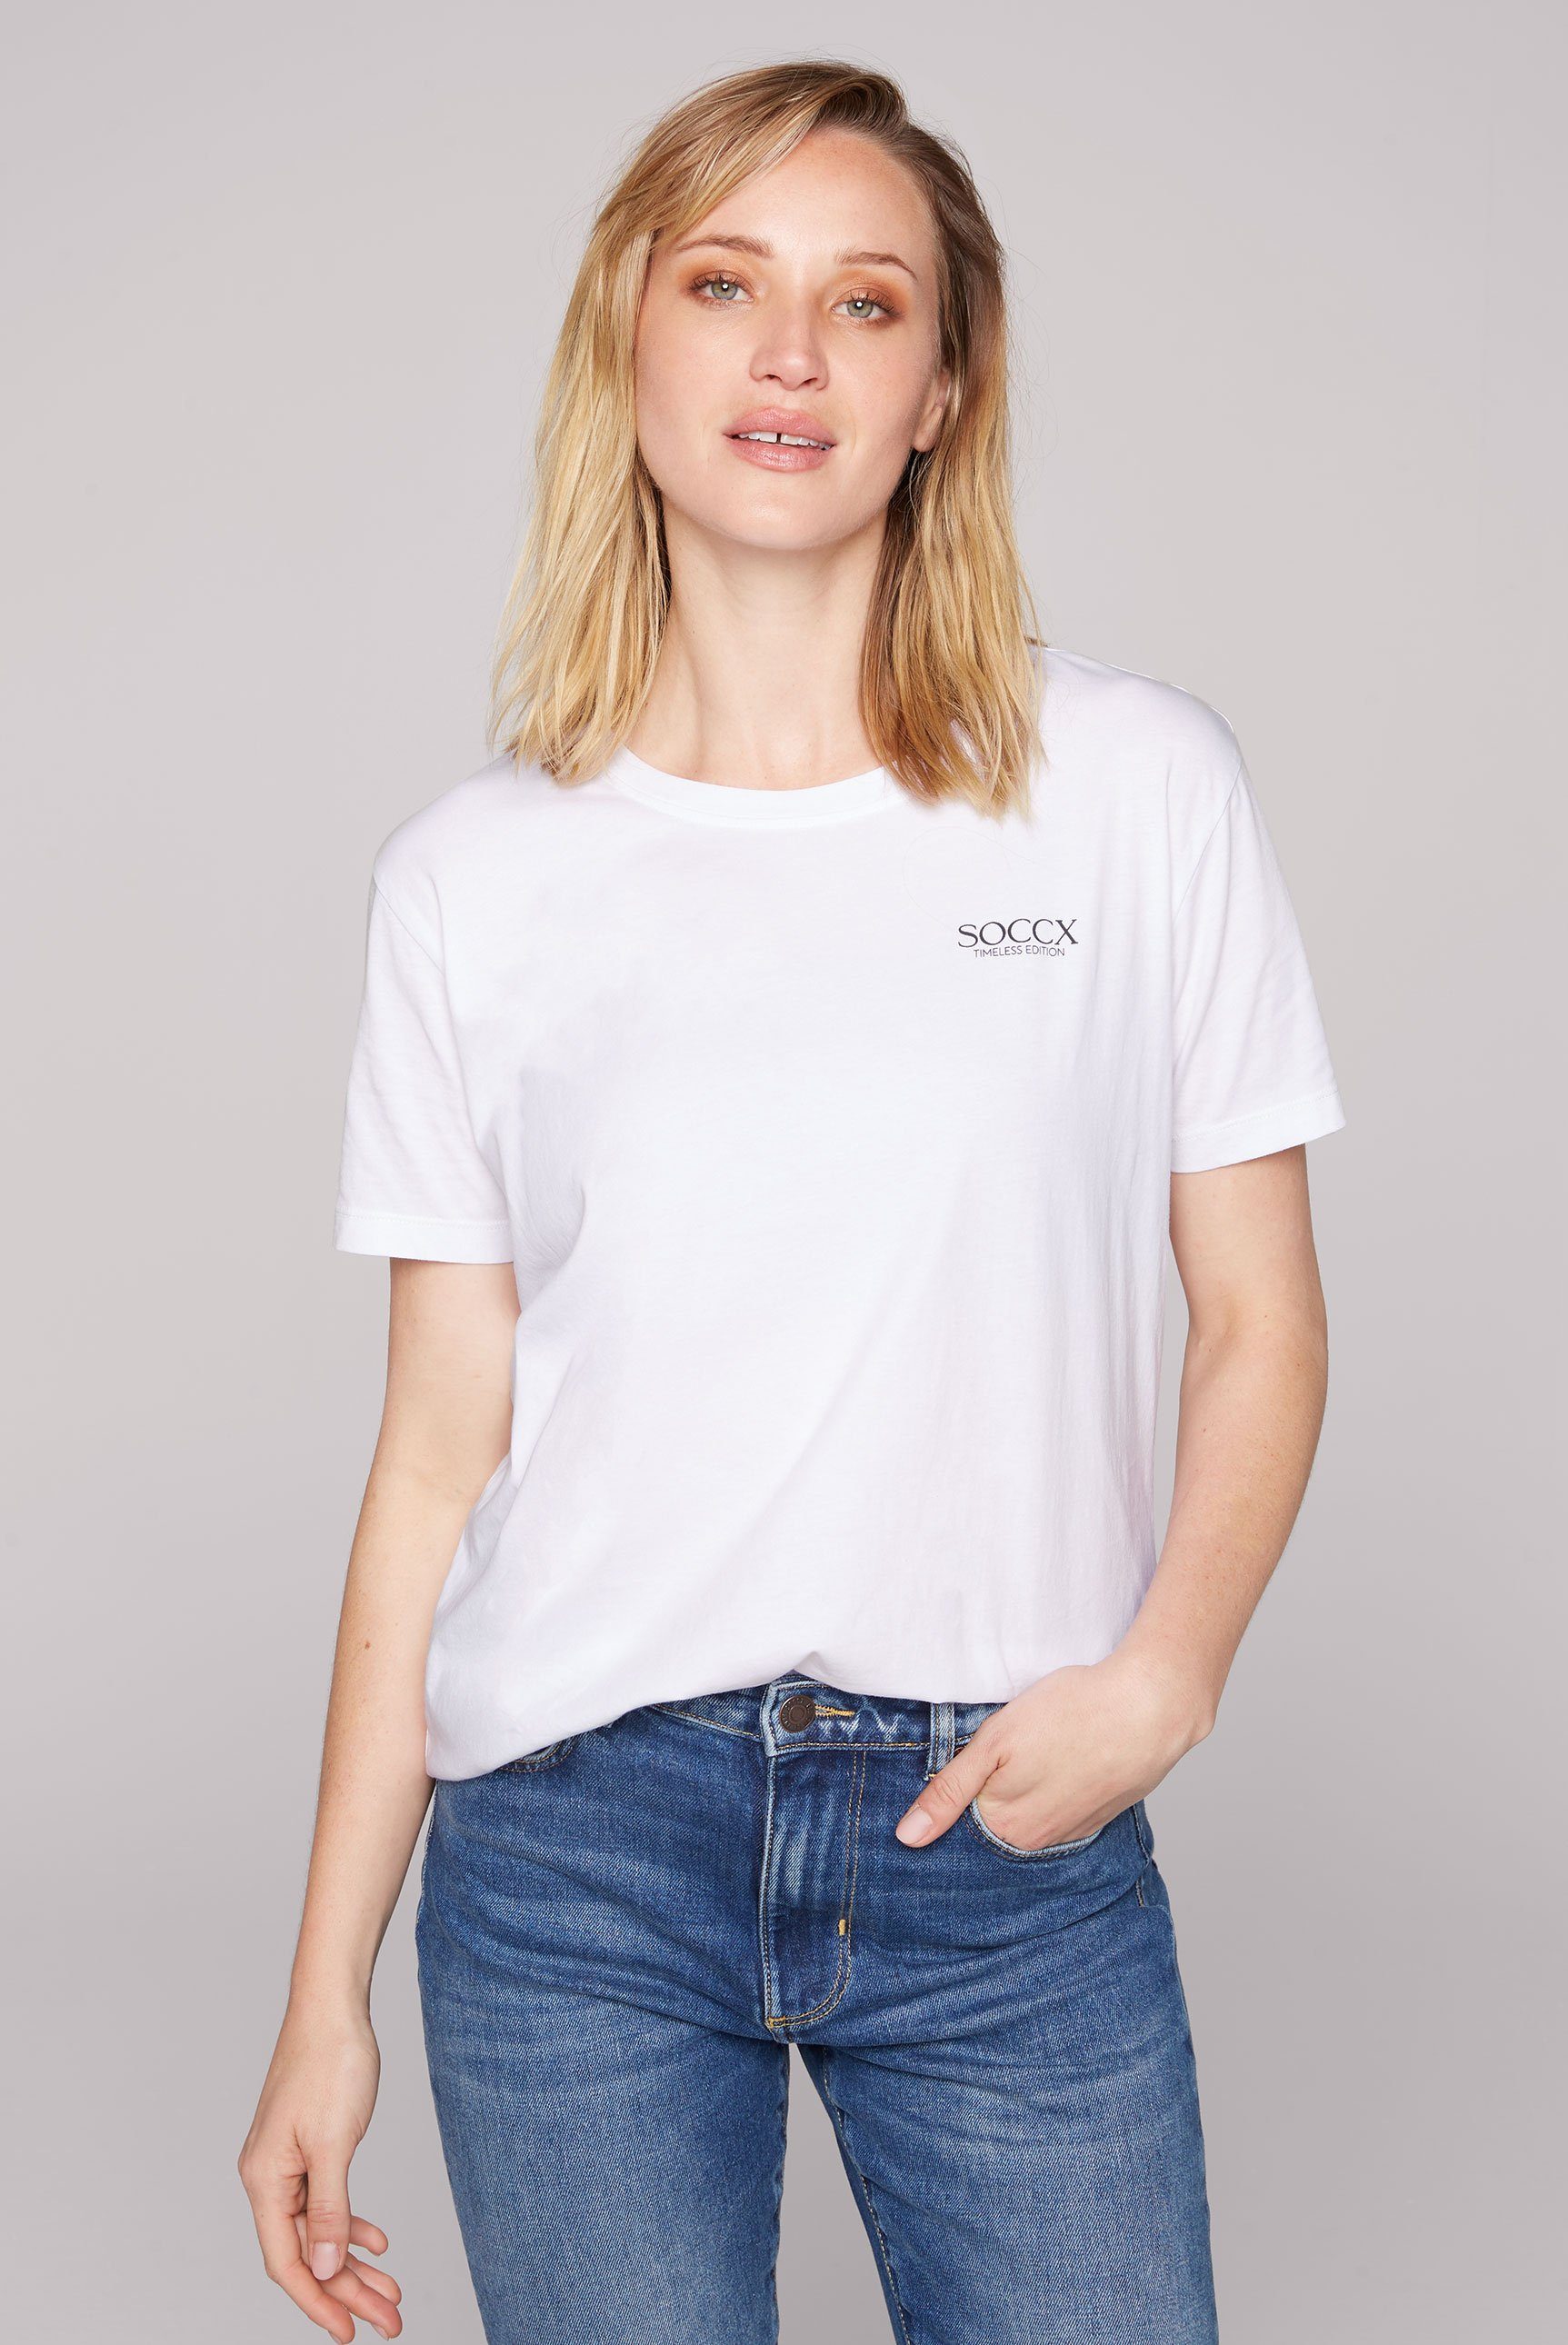 Brusthöhe Print auf Kleiner aus Logo Baumwolle, SOCCX Rundhalsshirt